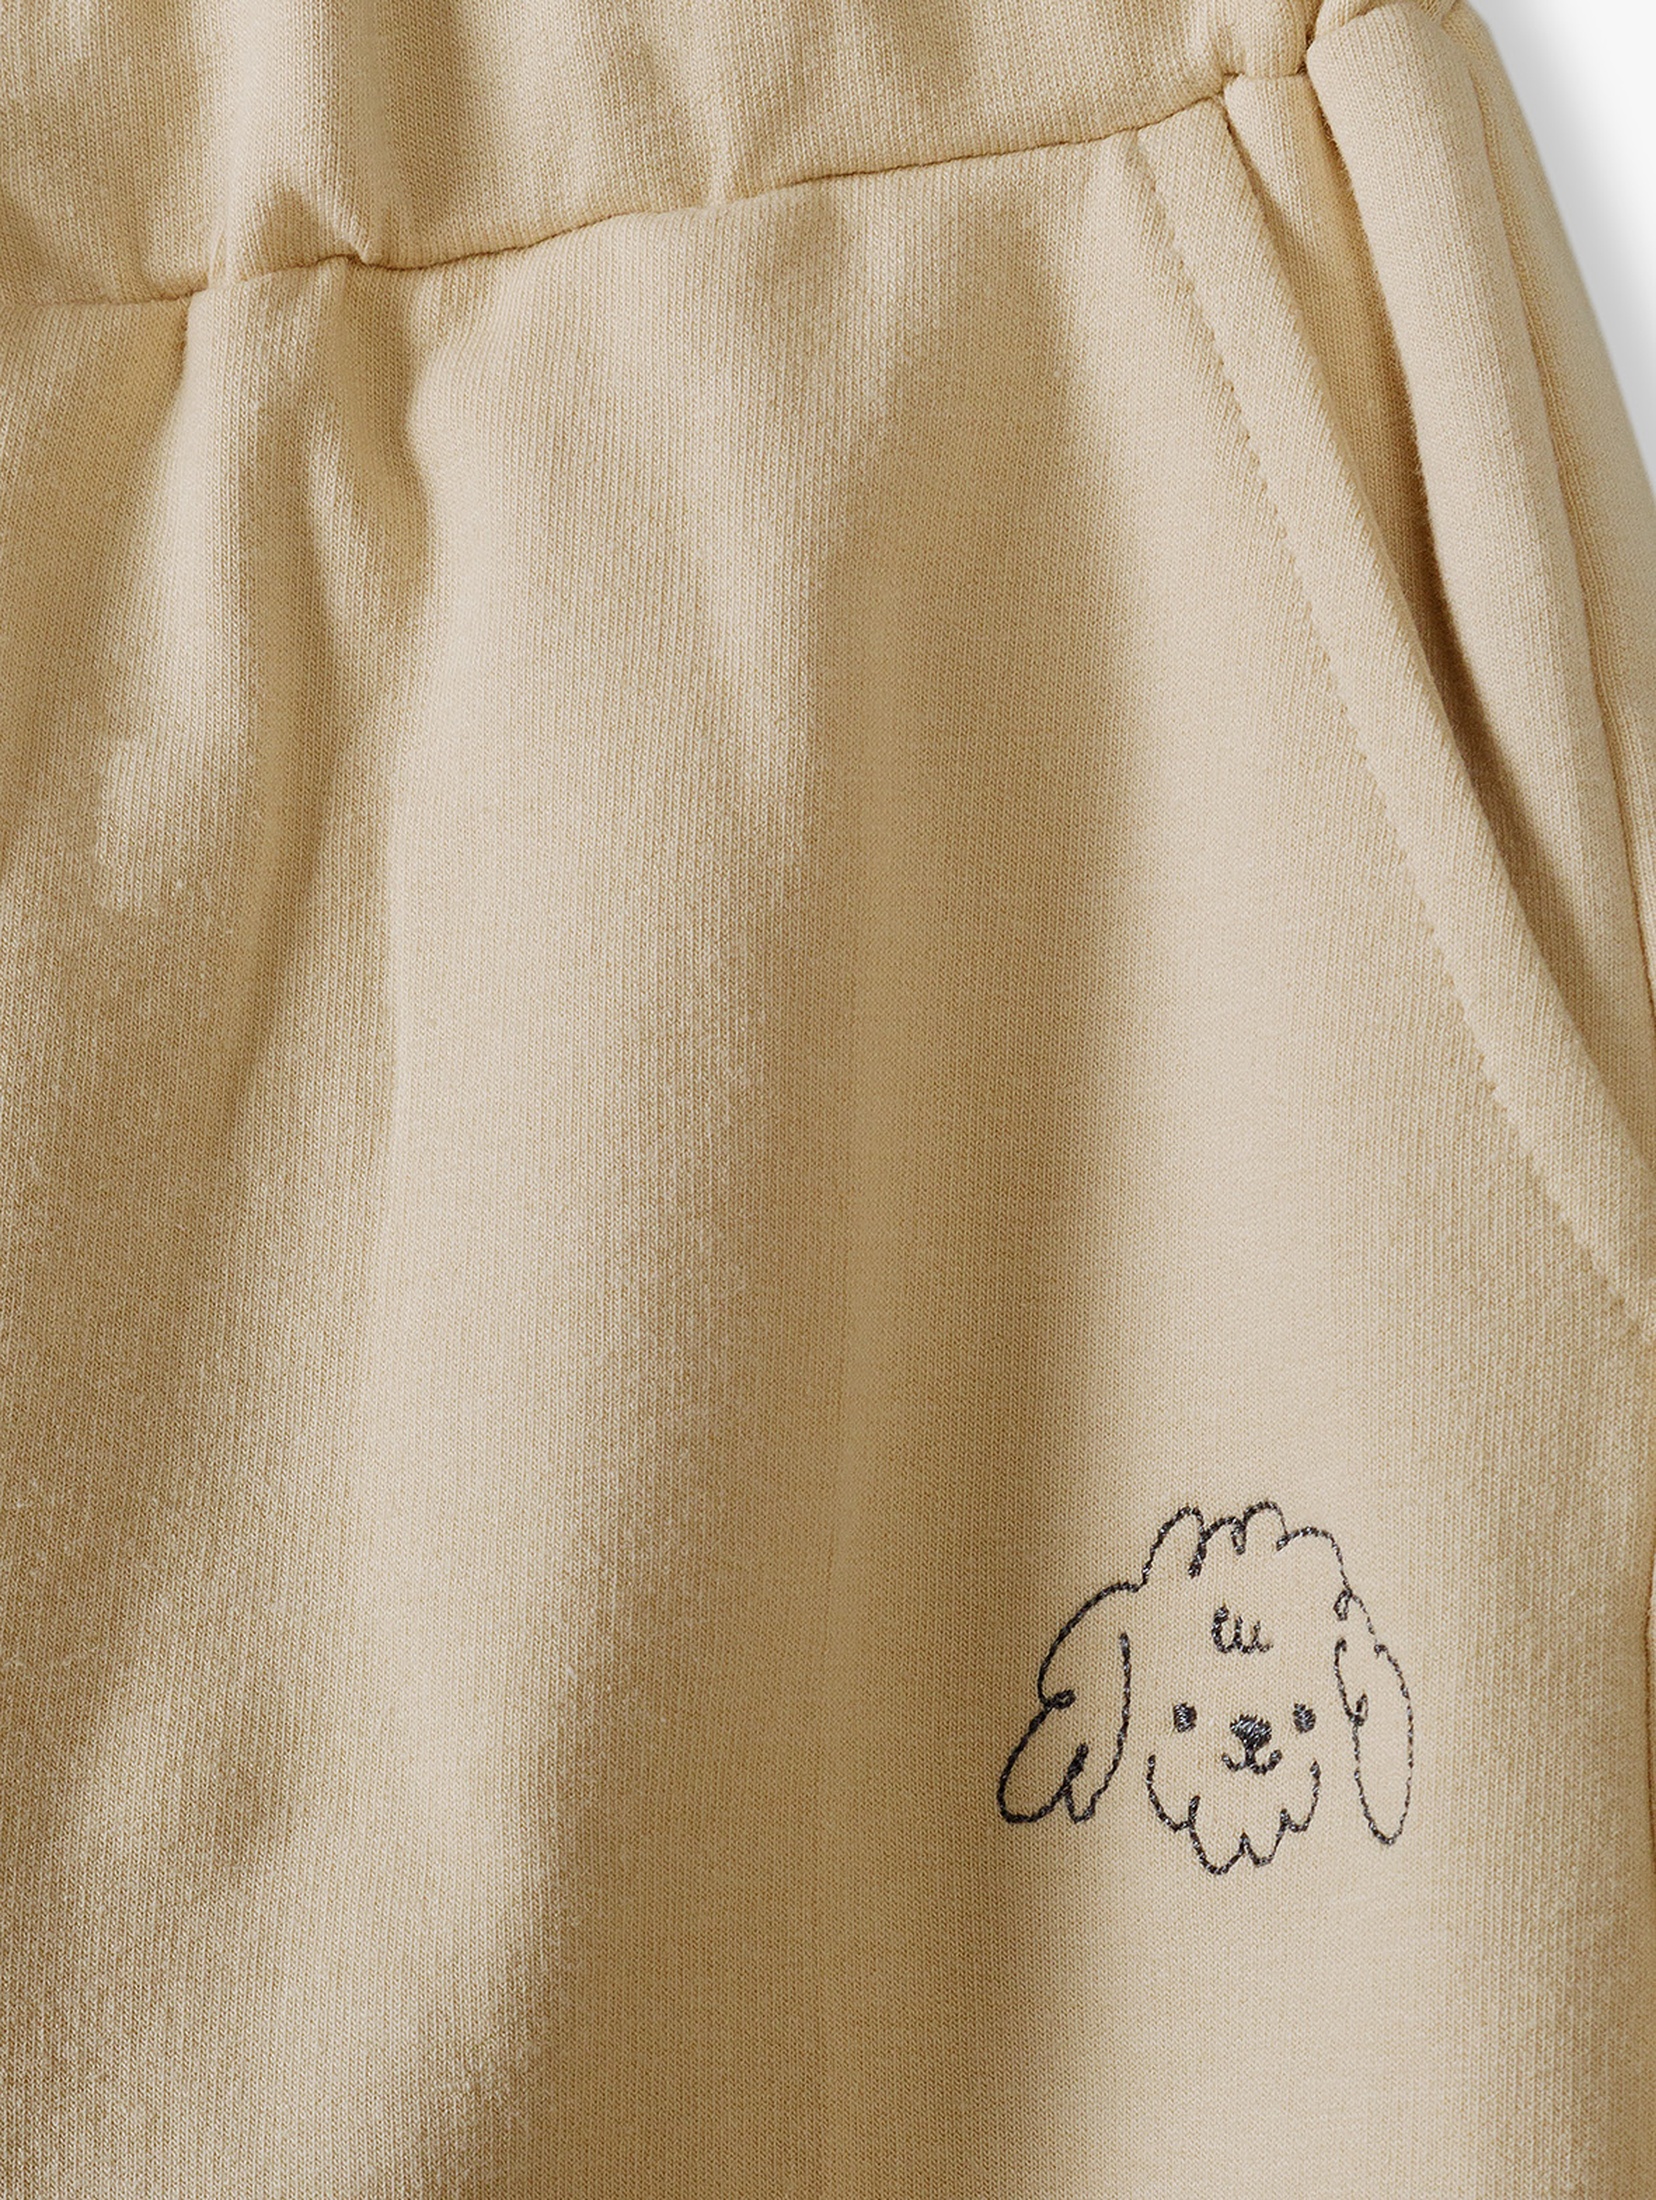 Spodnie dresowe dla dziewczynki - beżowe z pieskiem - 5.10.15.